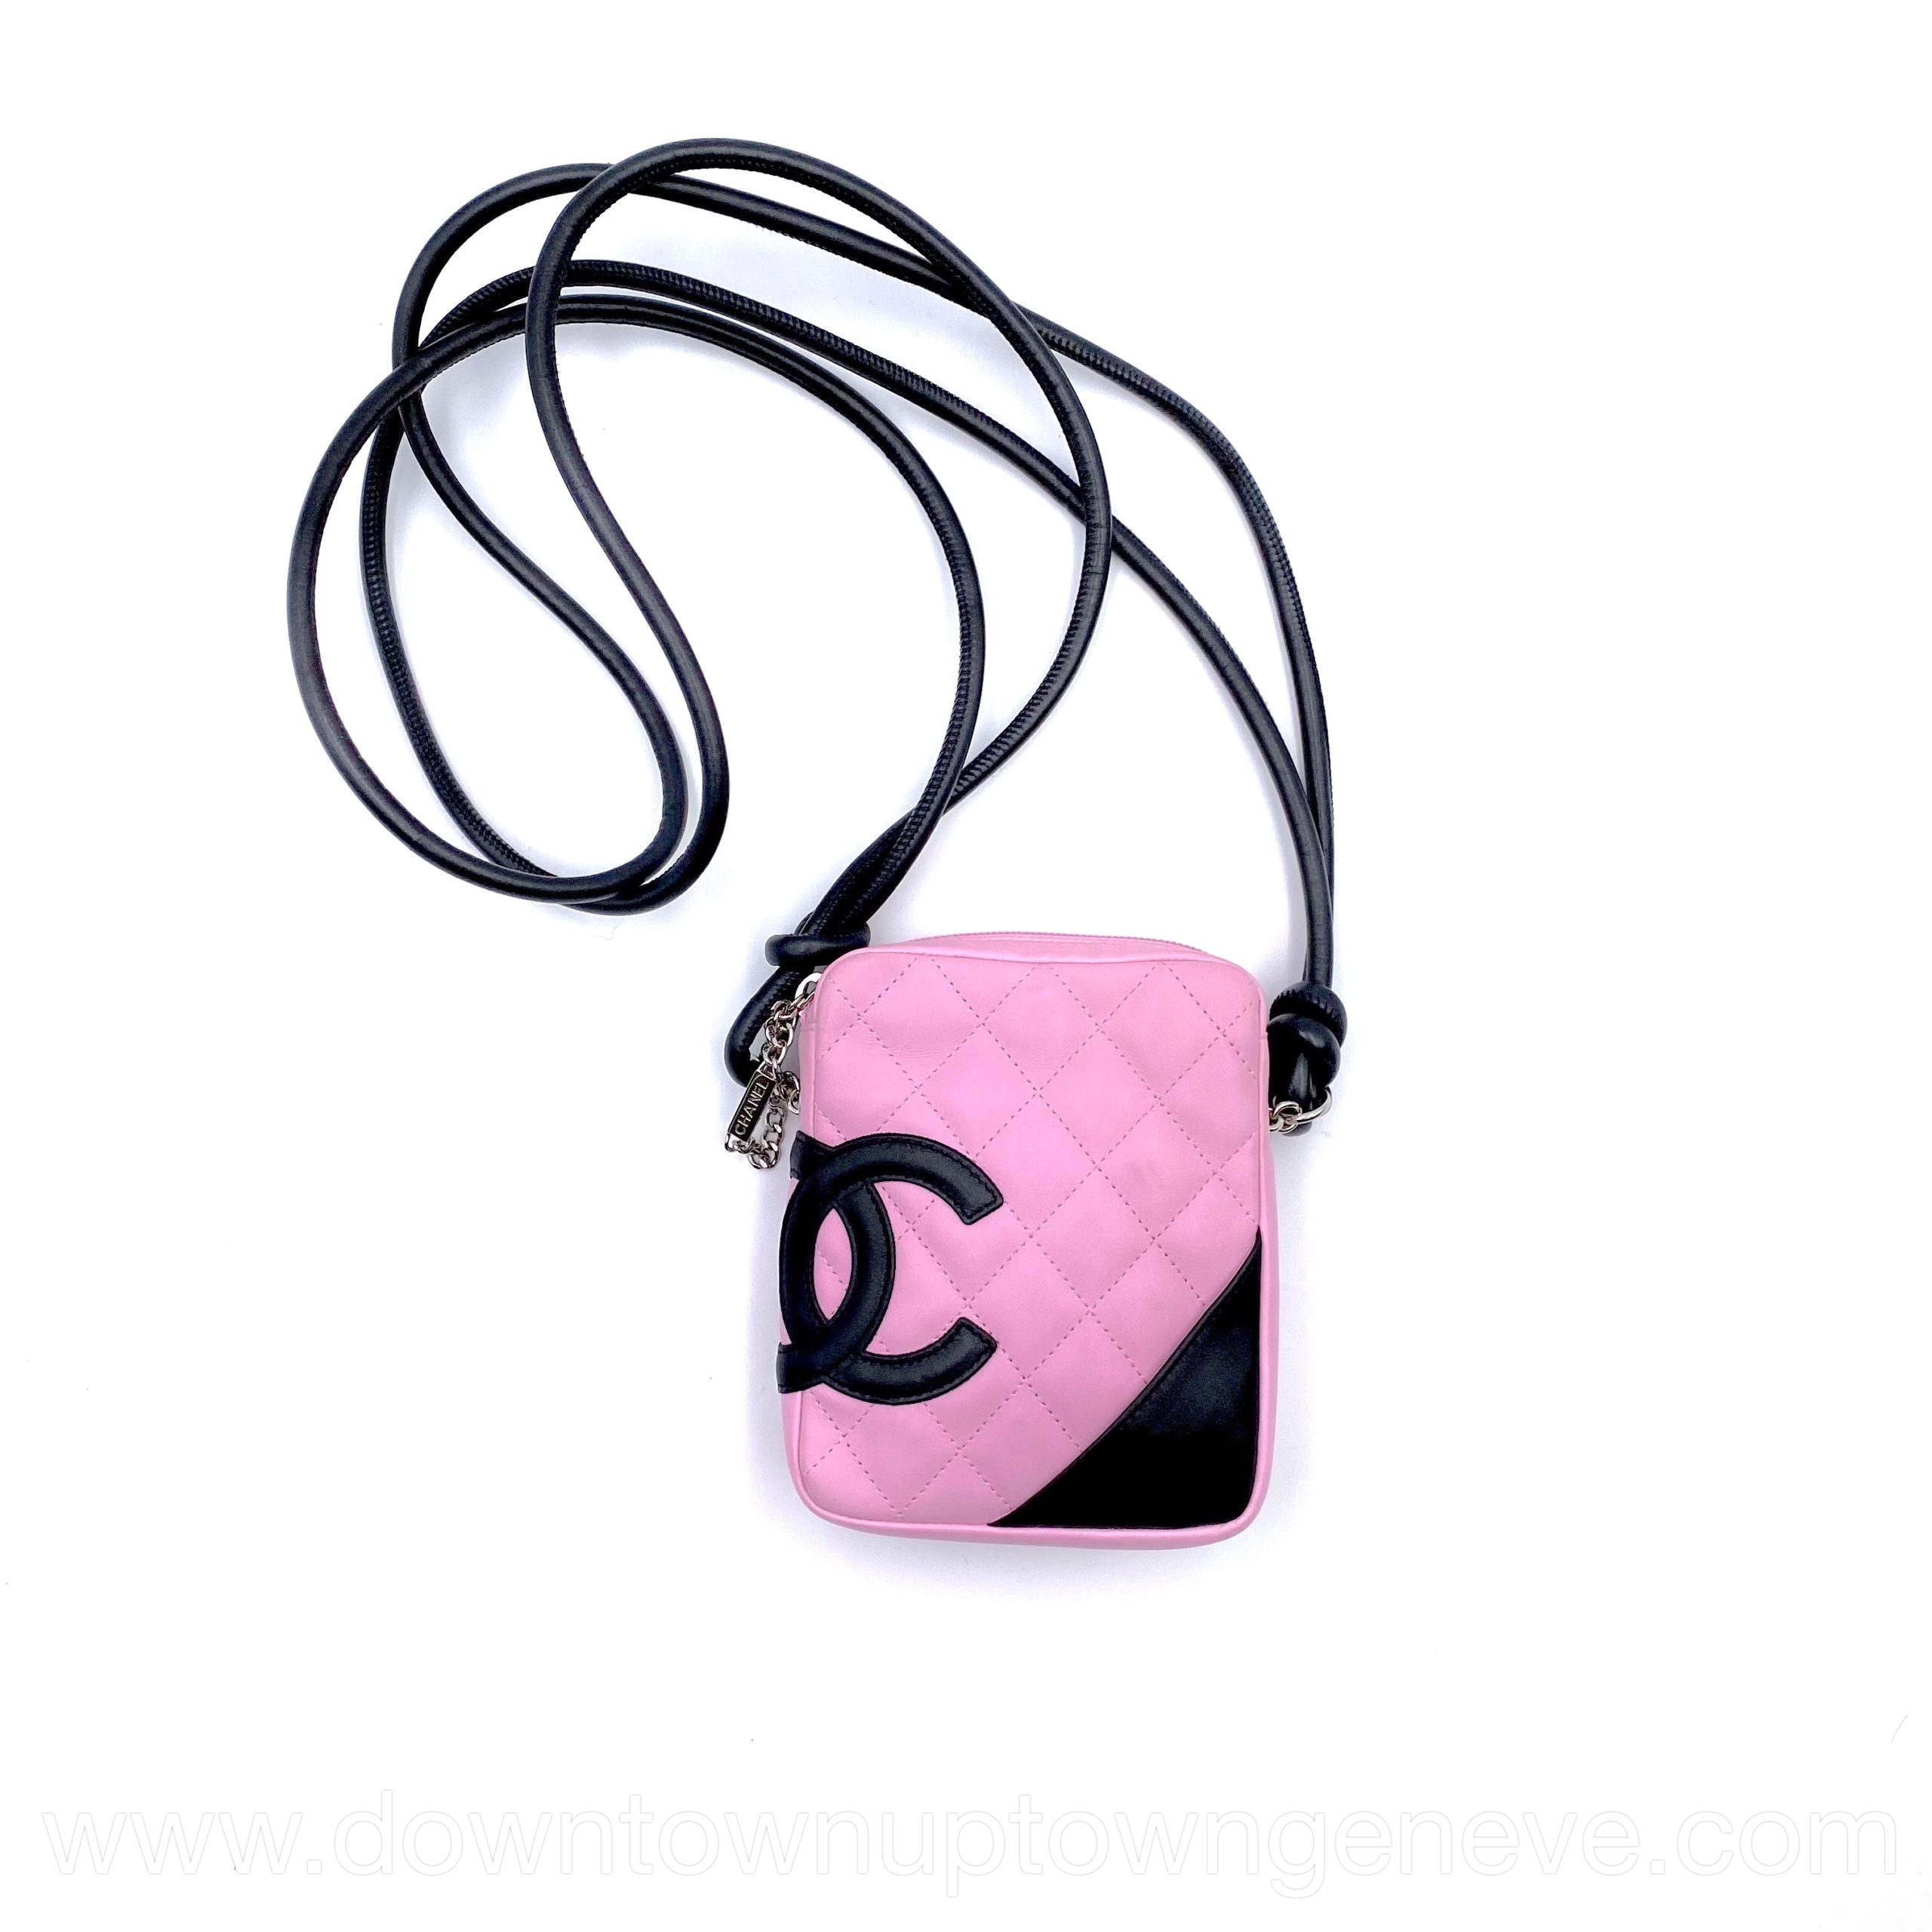 Chanel, Cambon Crossbody bag. - Unique Designer Pieces